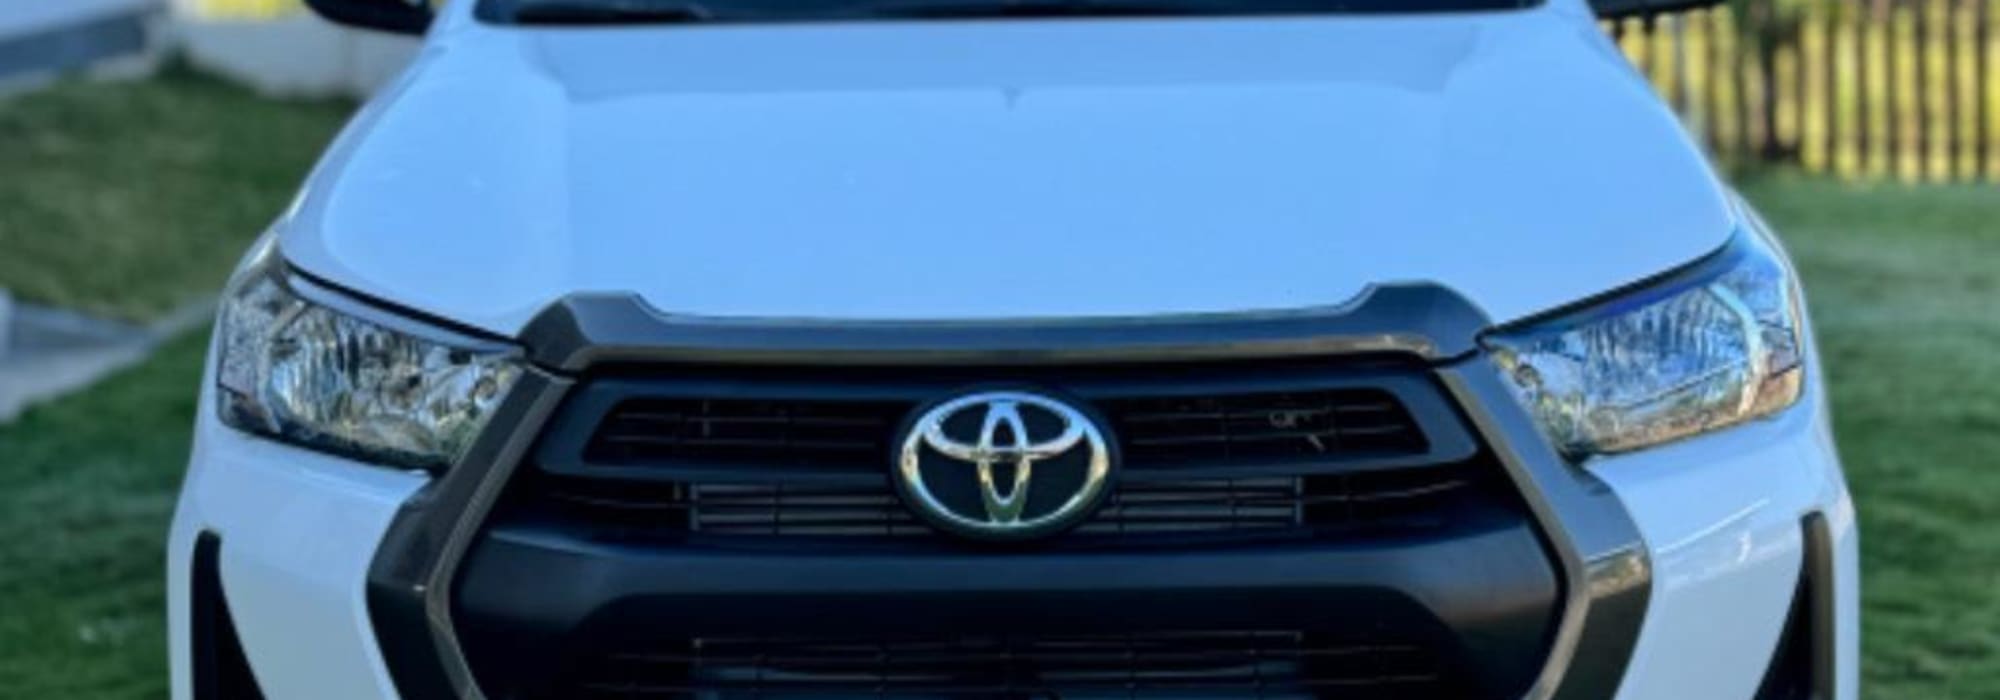 Toyota Hilux de 